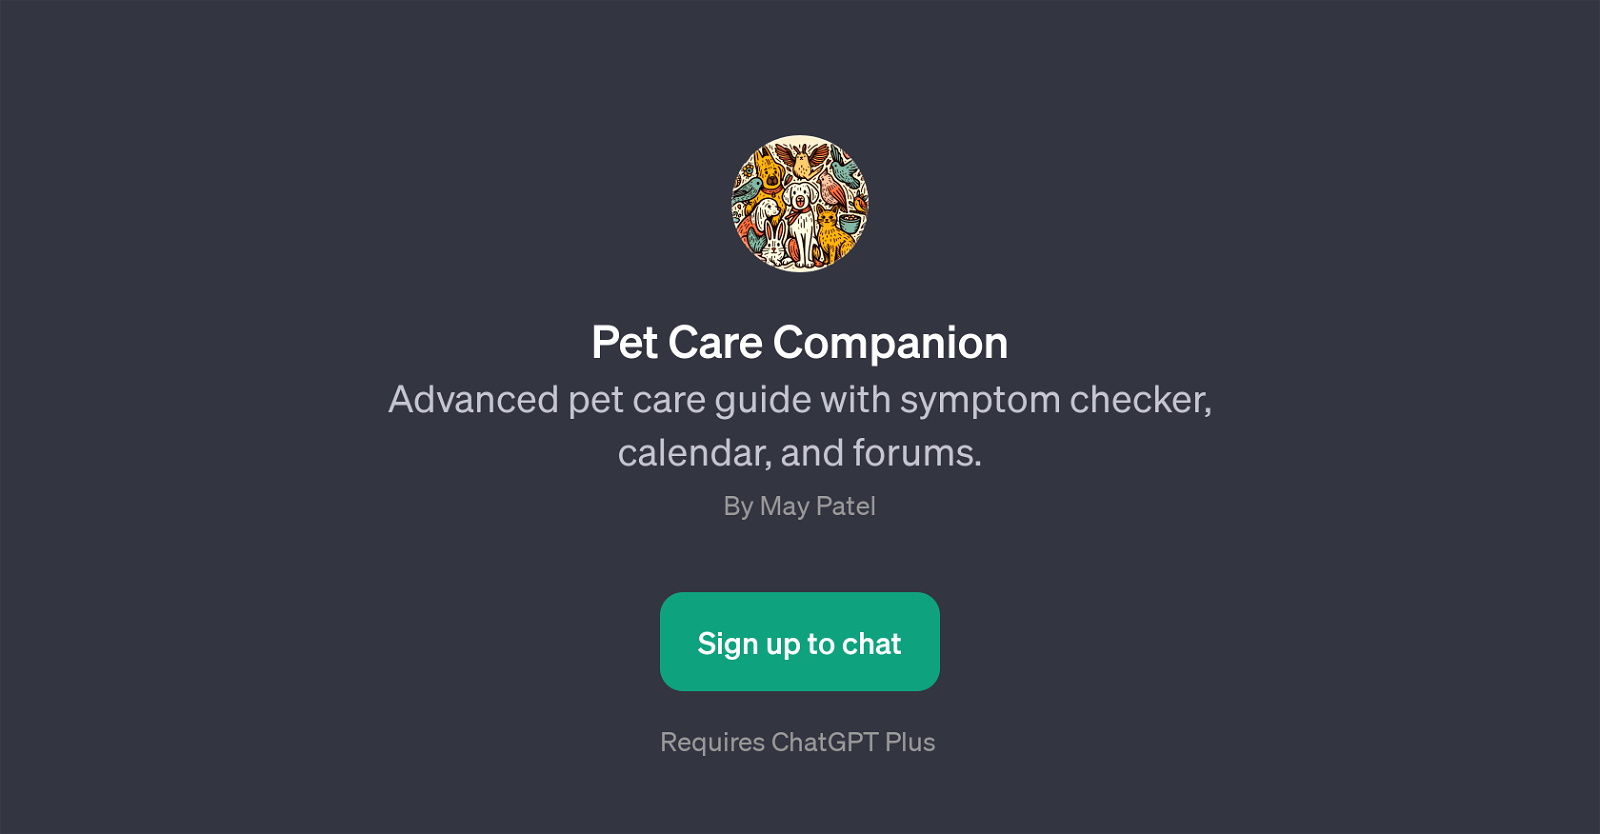 Pet Care Companion website